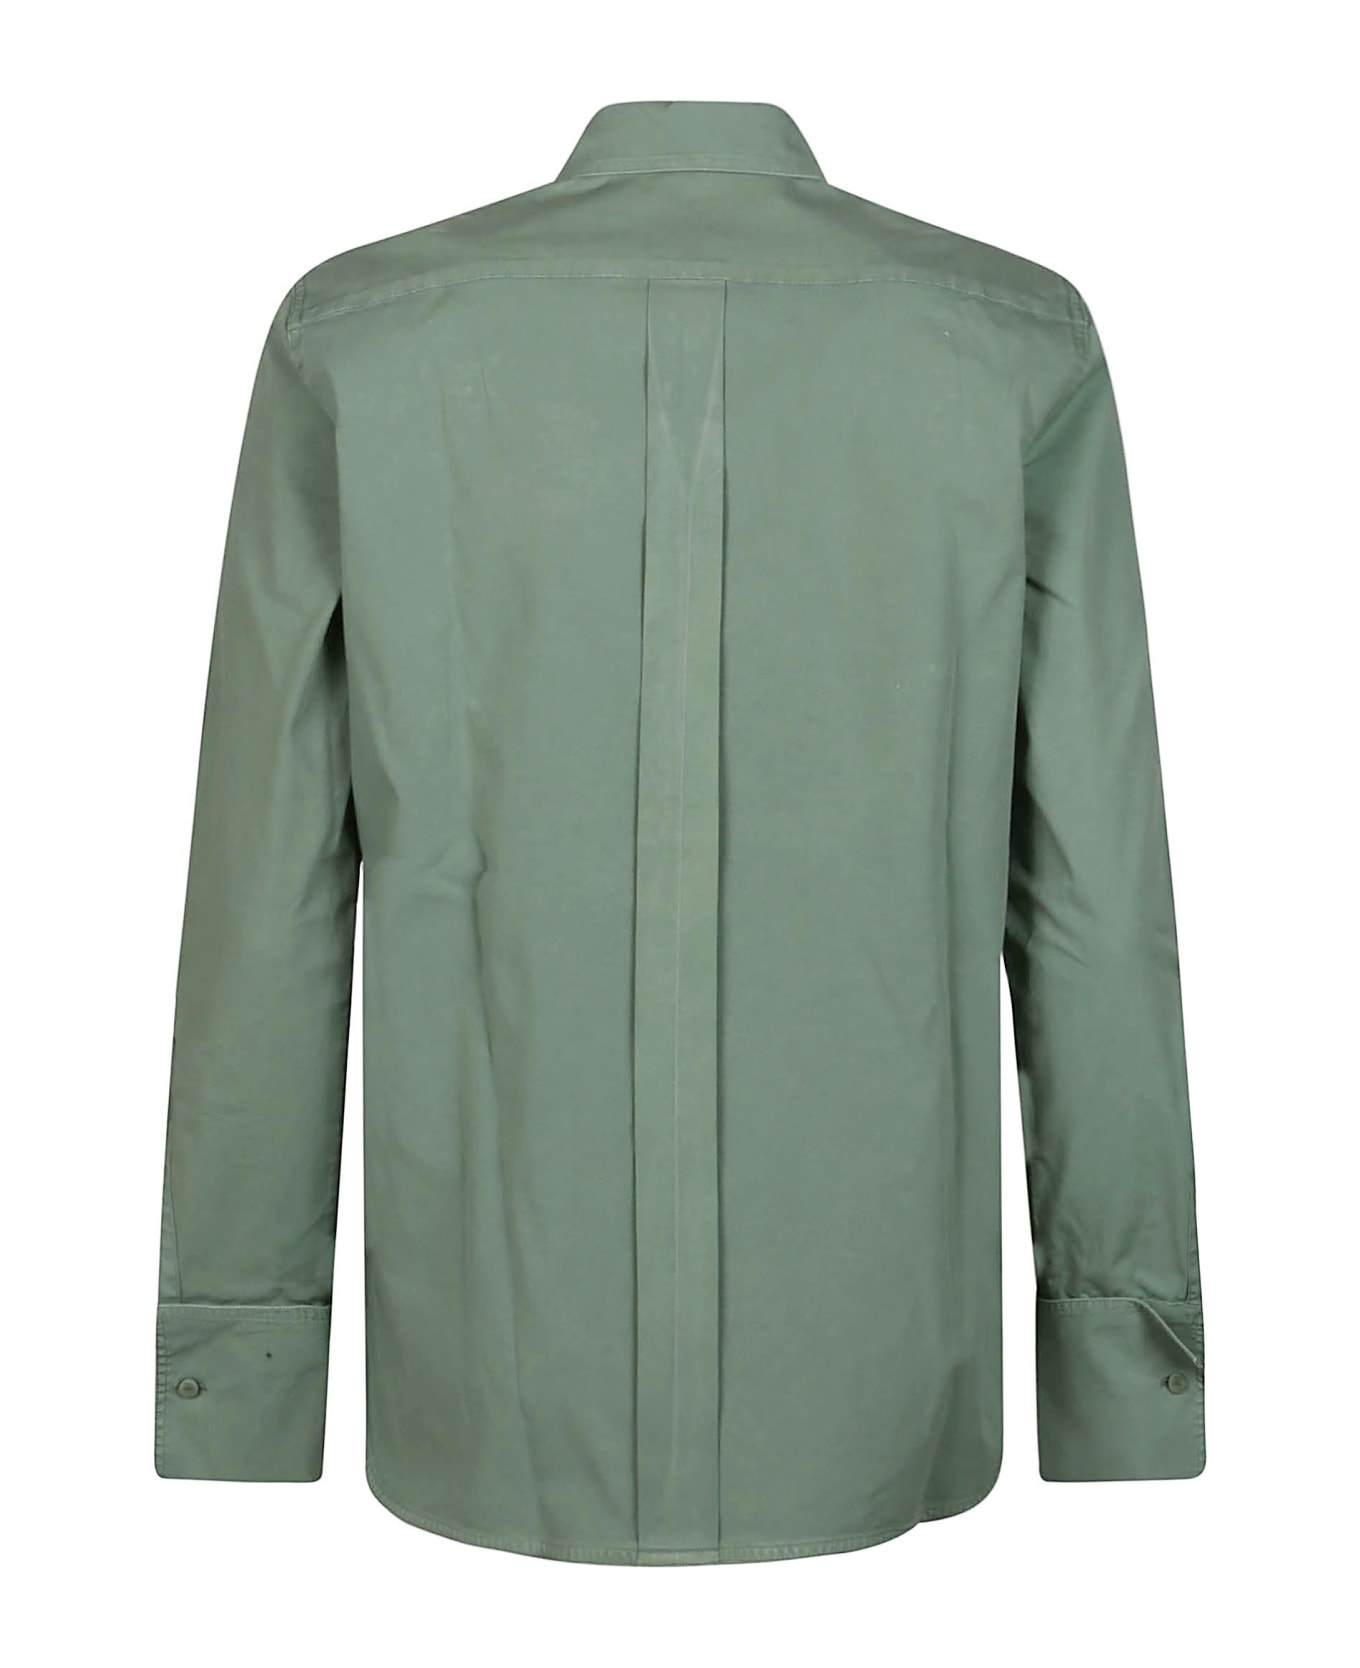 Max Mara Francia Long Sleeve Shirt - Green シャツ